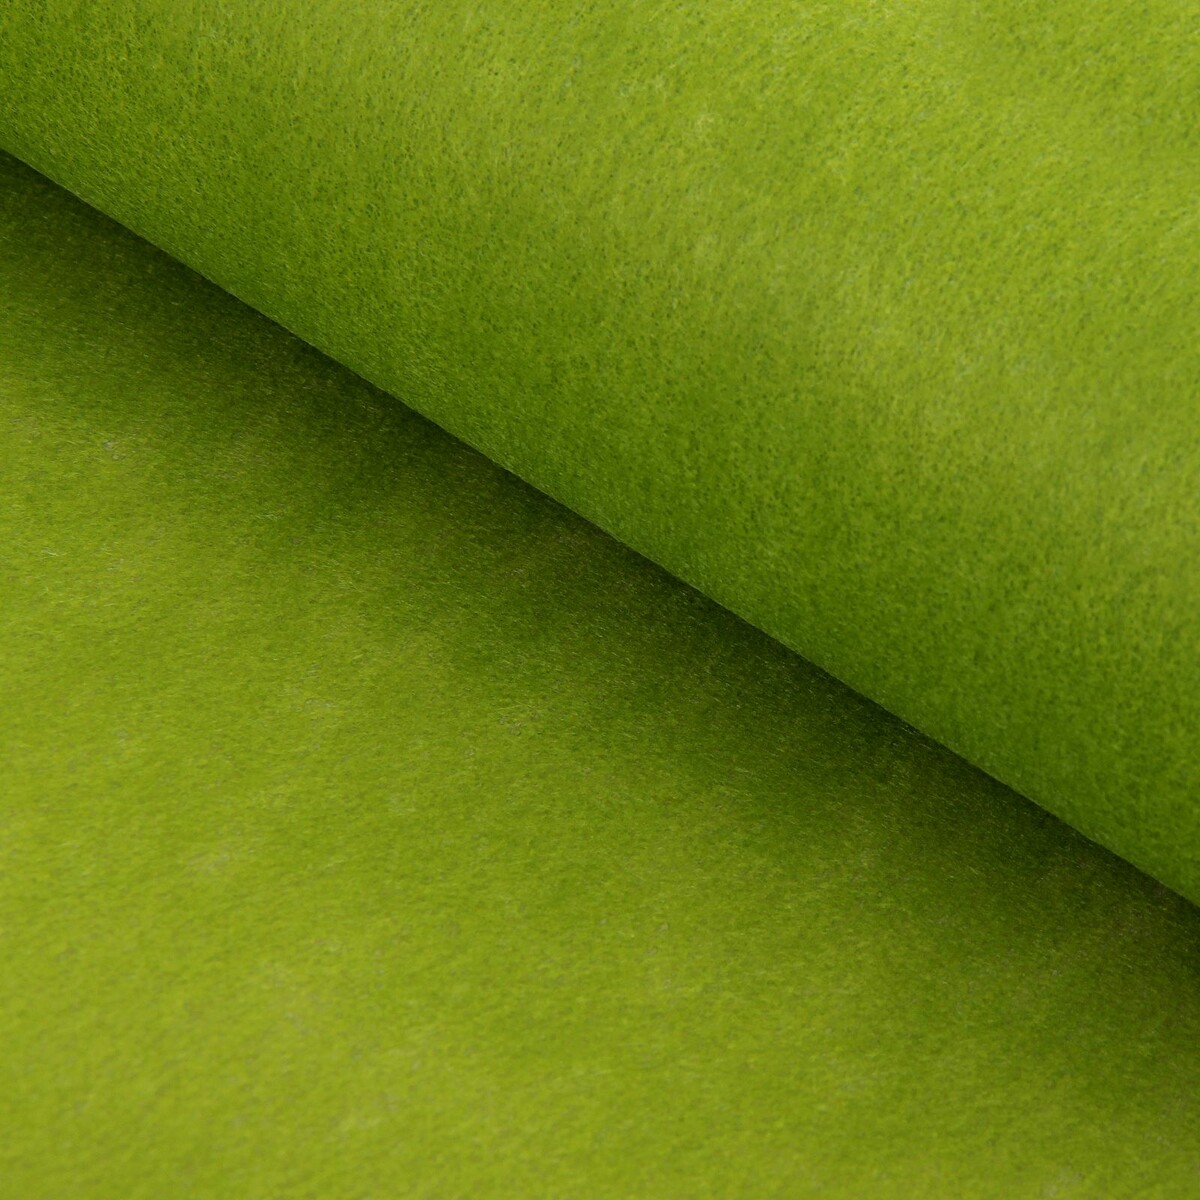 Фетр для упаковок и поделок, однотонный, оливковый, двусторонний, зеленый, рулон 1шт., 50 см x 15 м фетр для упаковок и поделок однотонный ярко розовый однотонный двусторонний рулон 1шт 50 см x 15 м